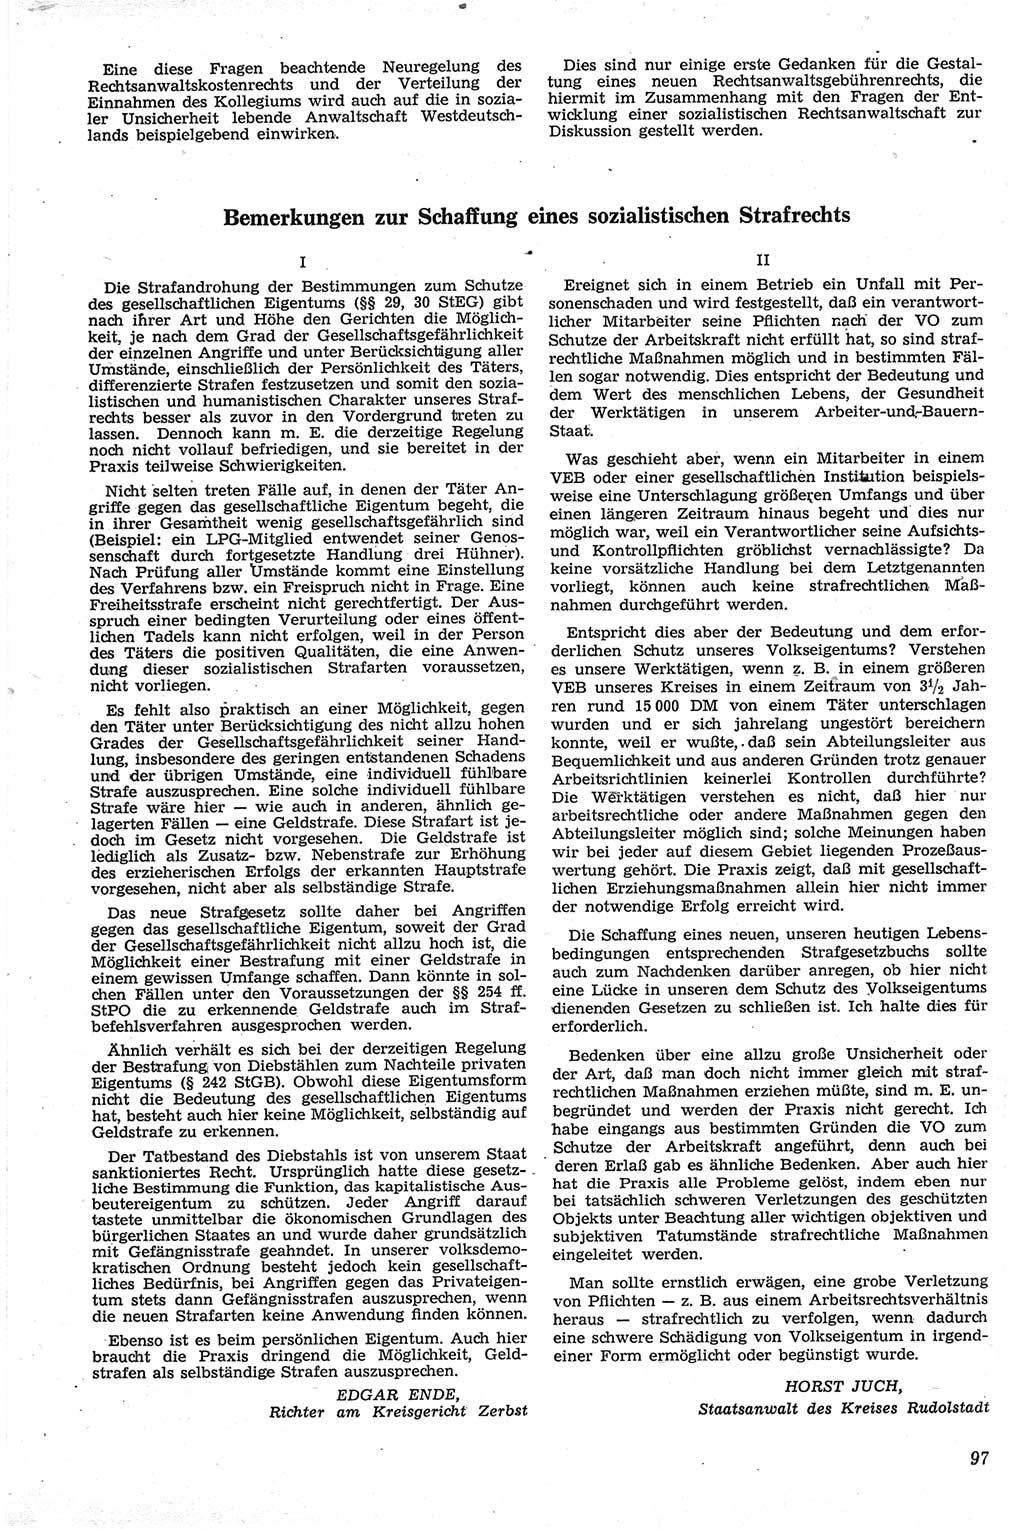 Neue Justiz (NJ), Zeitschrift für Recht und Rechtswissenschaft [Deutsche Demokratische Republik (DDR)], 13. Jahrgang 1959, Seite 97 (NJ DDR 1959, S. 97)